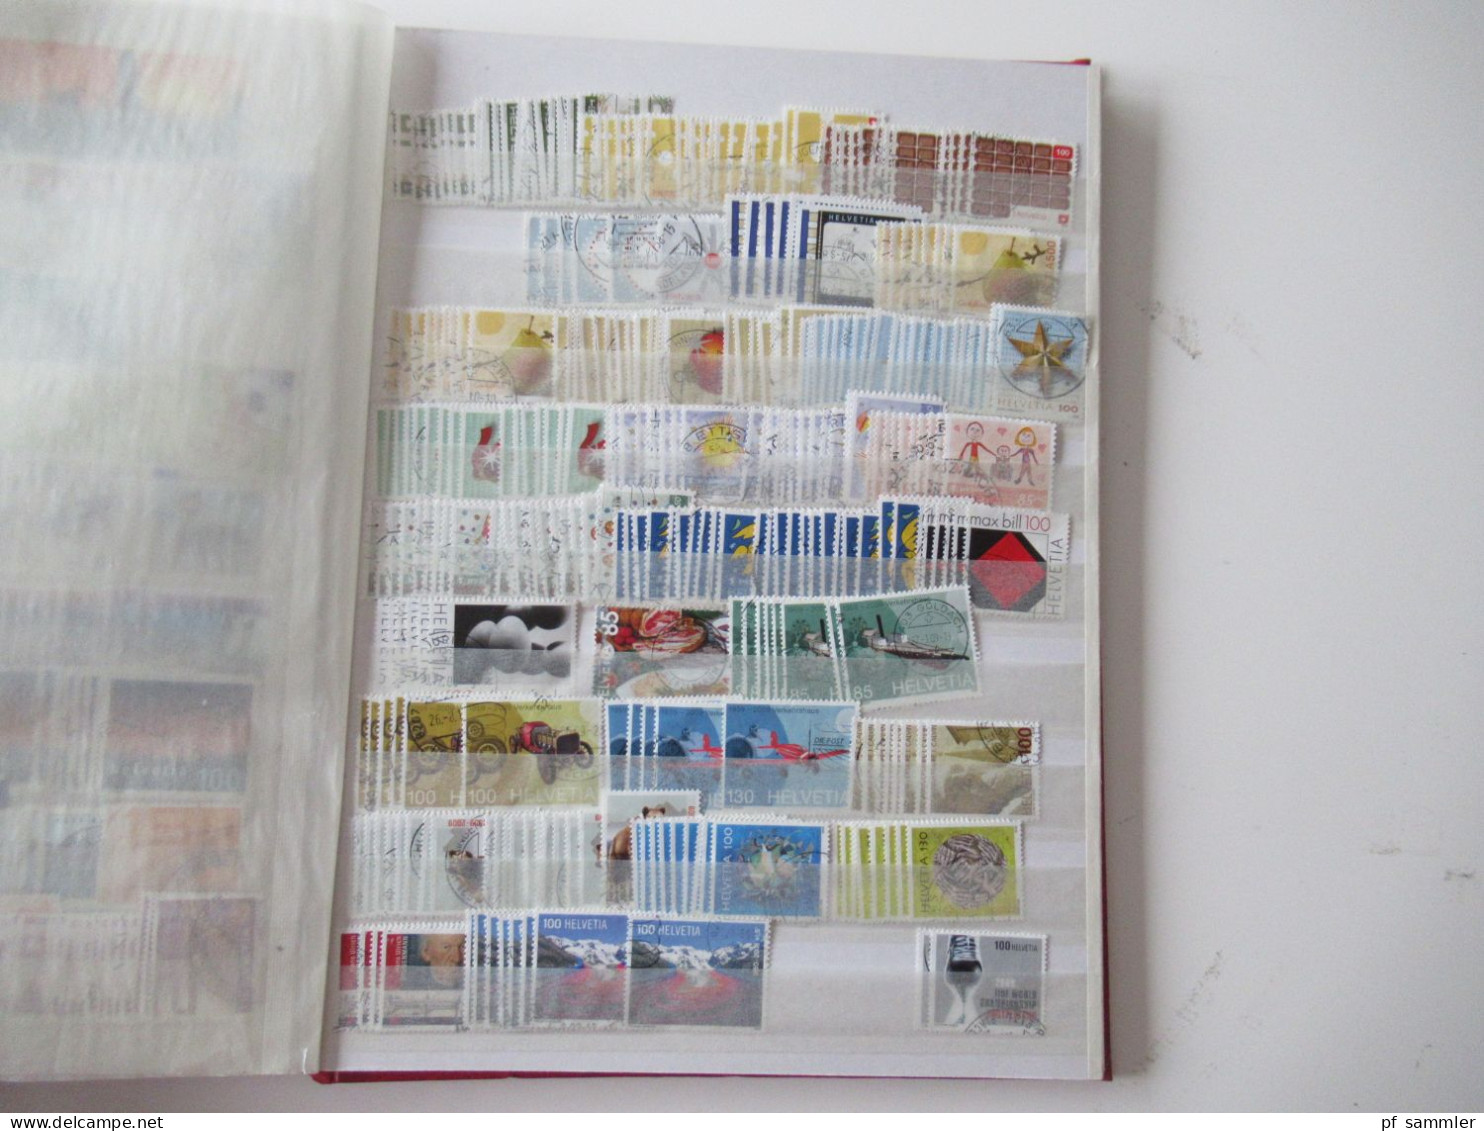 Sammlung / interessantes Album / Lagerbuch Europa Schweiz 1995 - 2011 tausende gestempelte Marken  / Fundgrube!